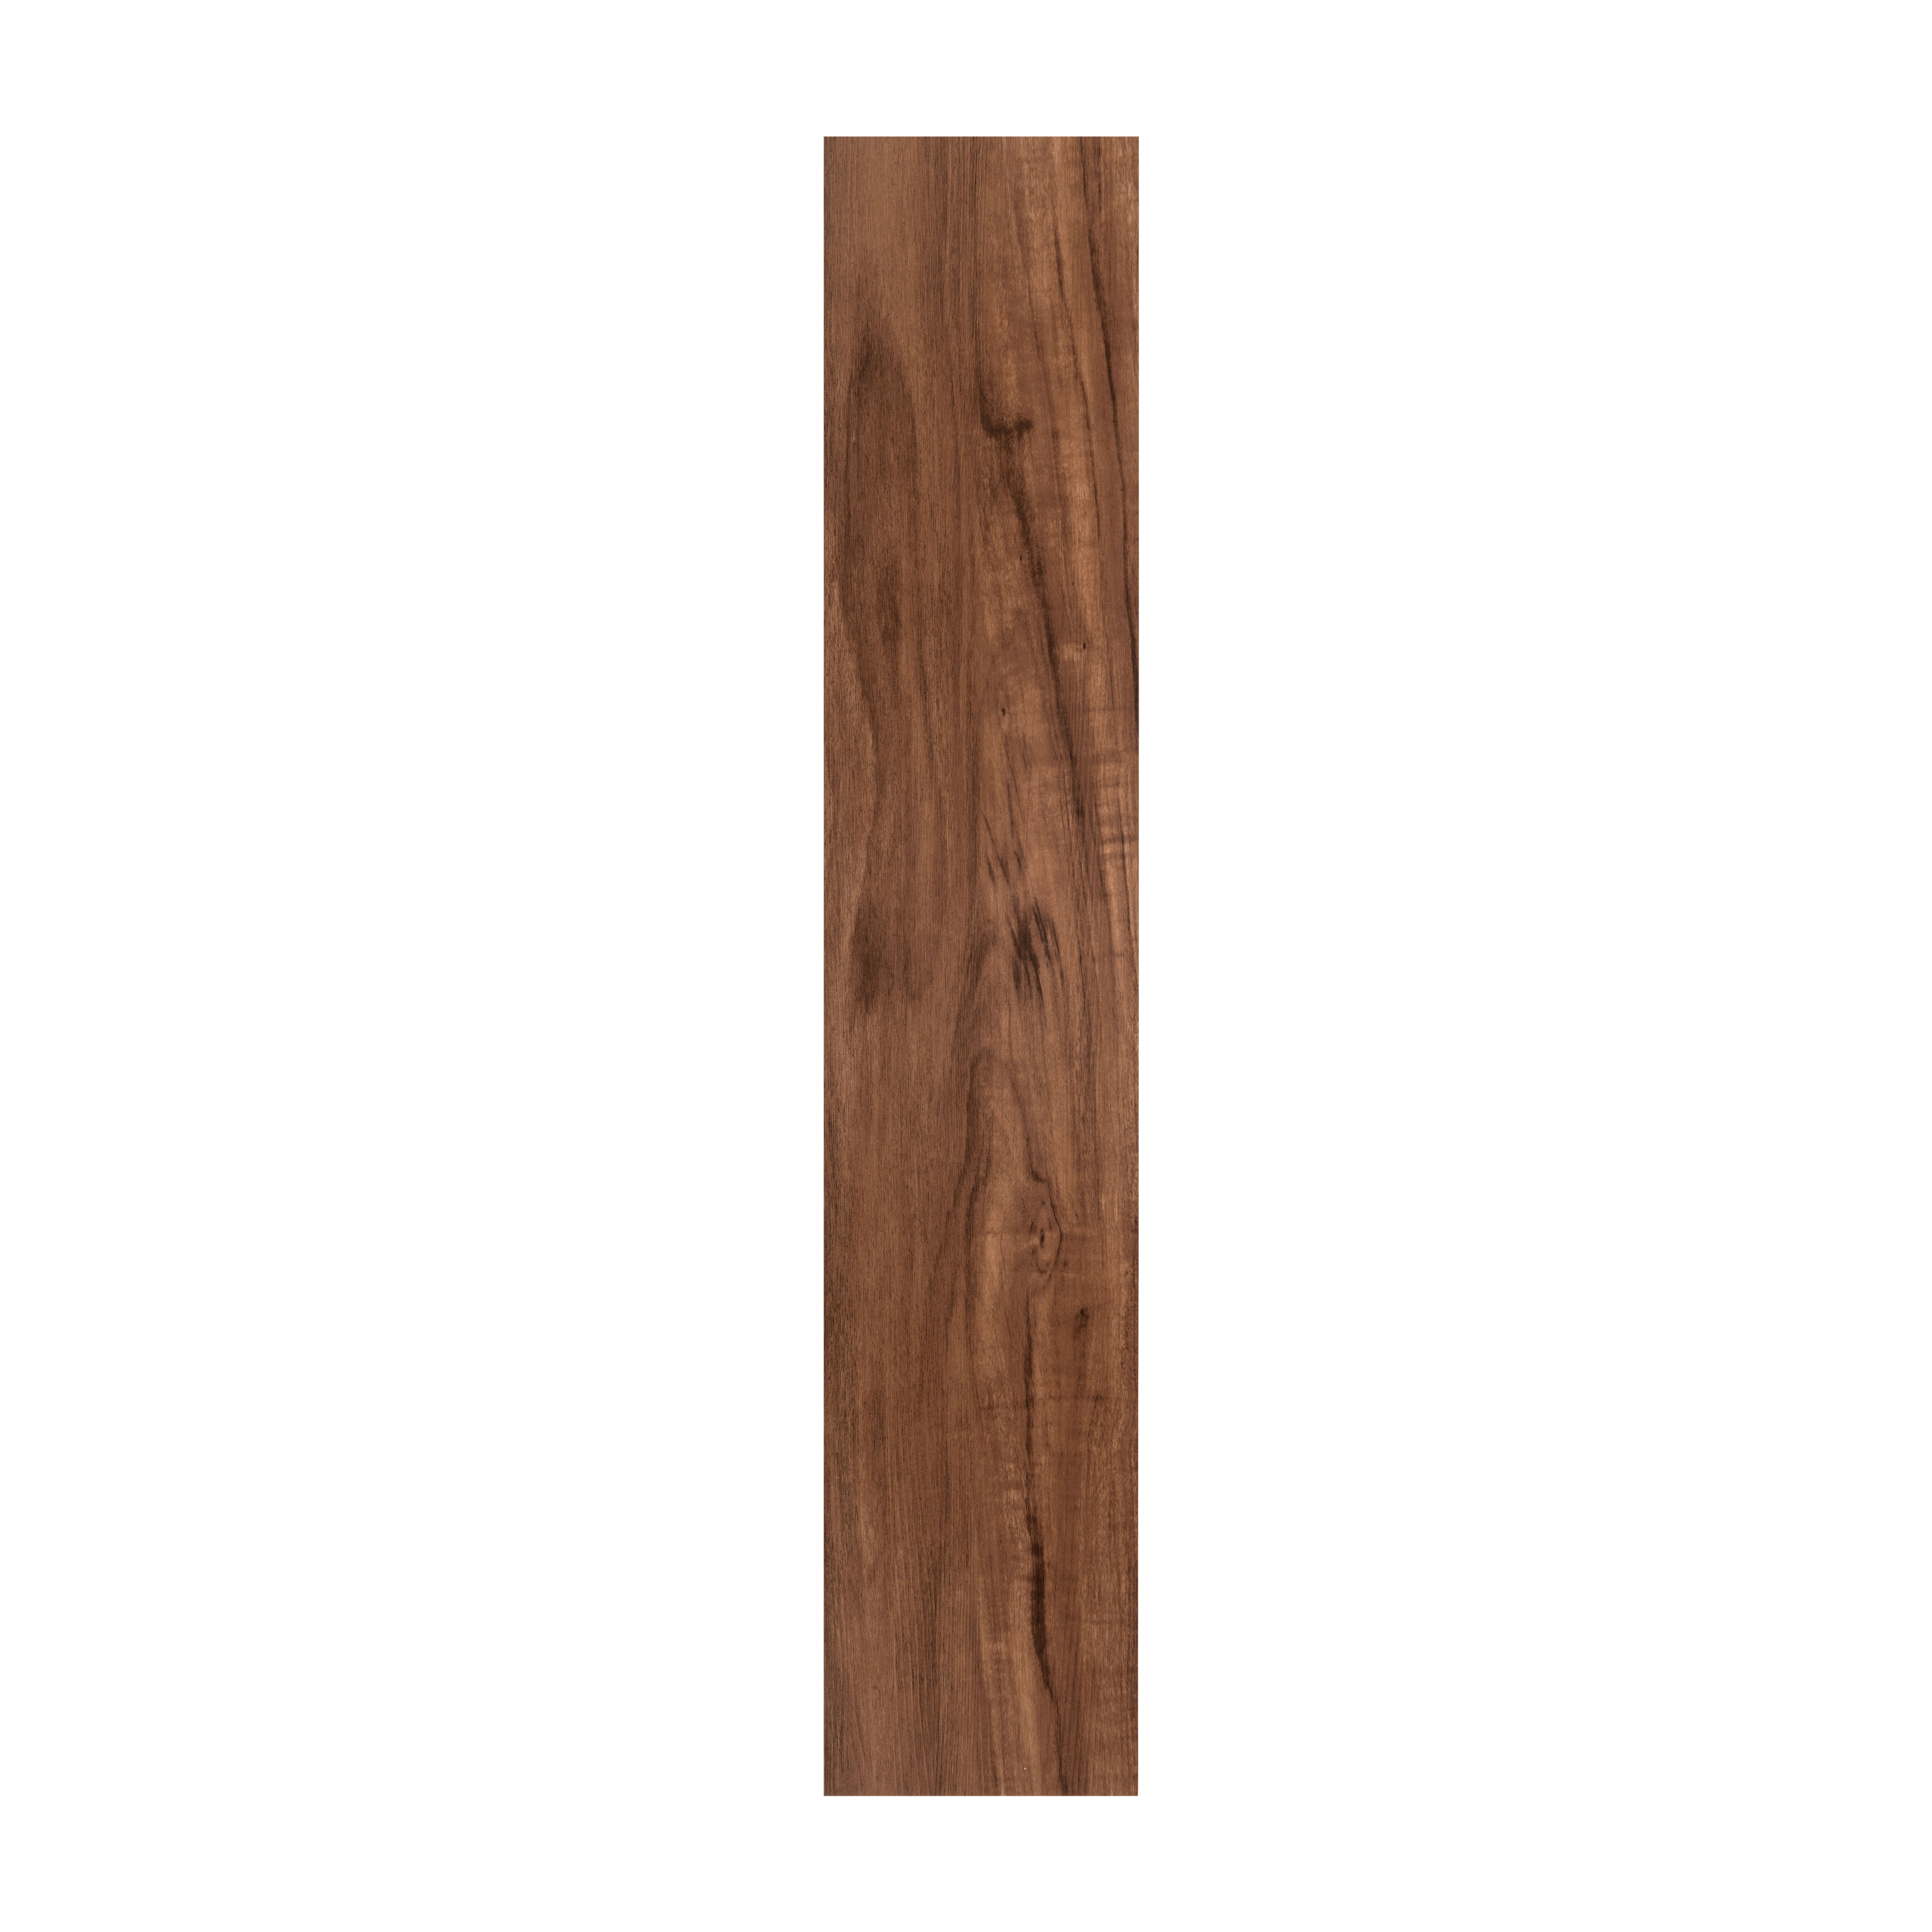 20 attractive Hardwood Flooring Imports 2024 free download hardwood flooring imports of achim importing co flex florac2a2ac2a2 looselay vinyl plank 9inx48in pertaining to achim importing co flex florac2a2ac2a2 looselay vinyl plank 9inx48in rustic ch